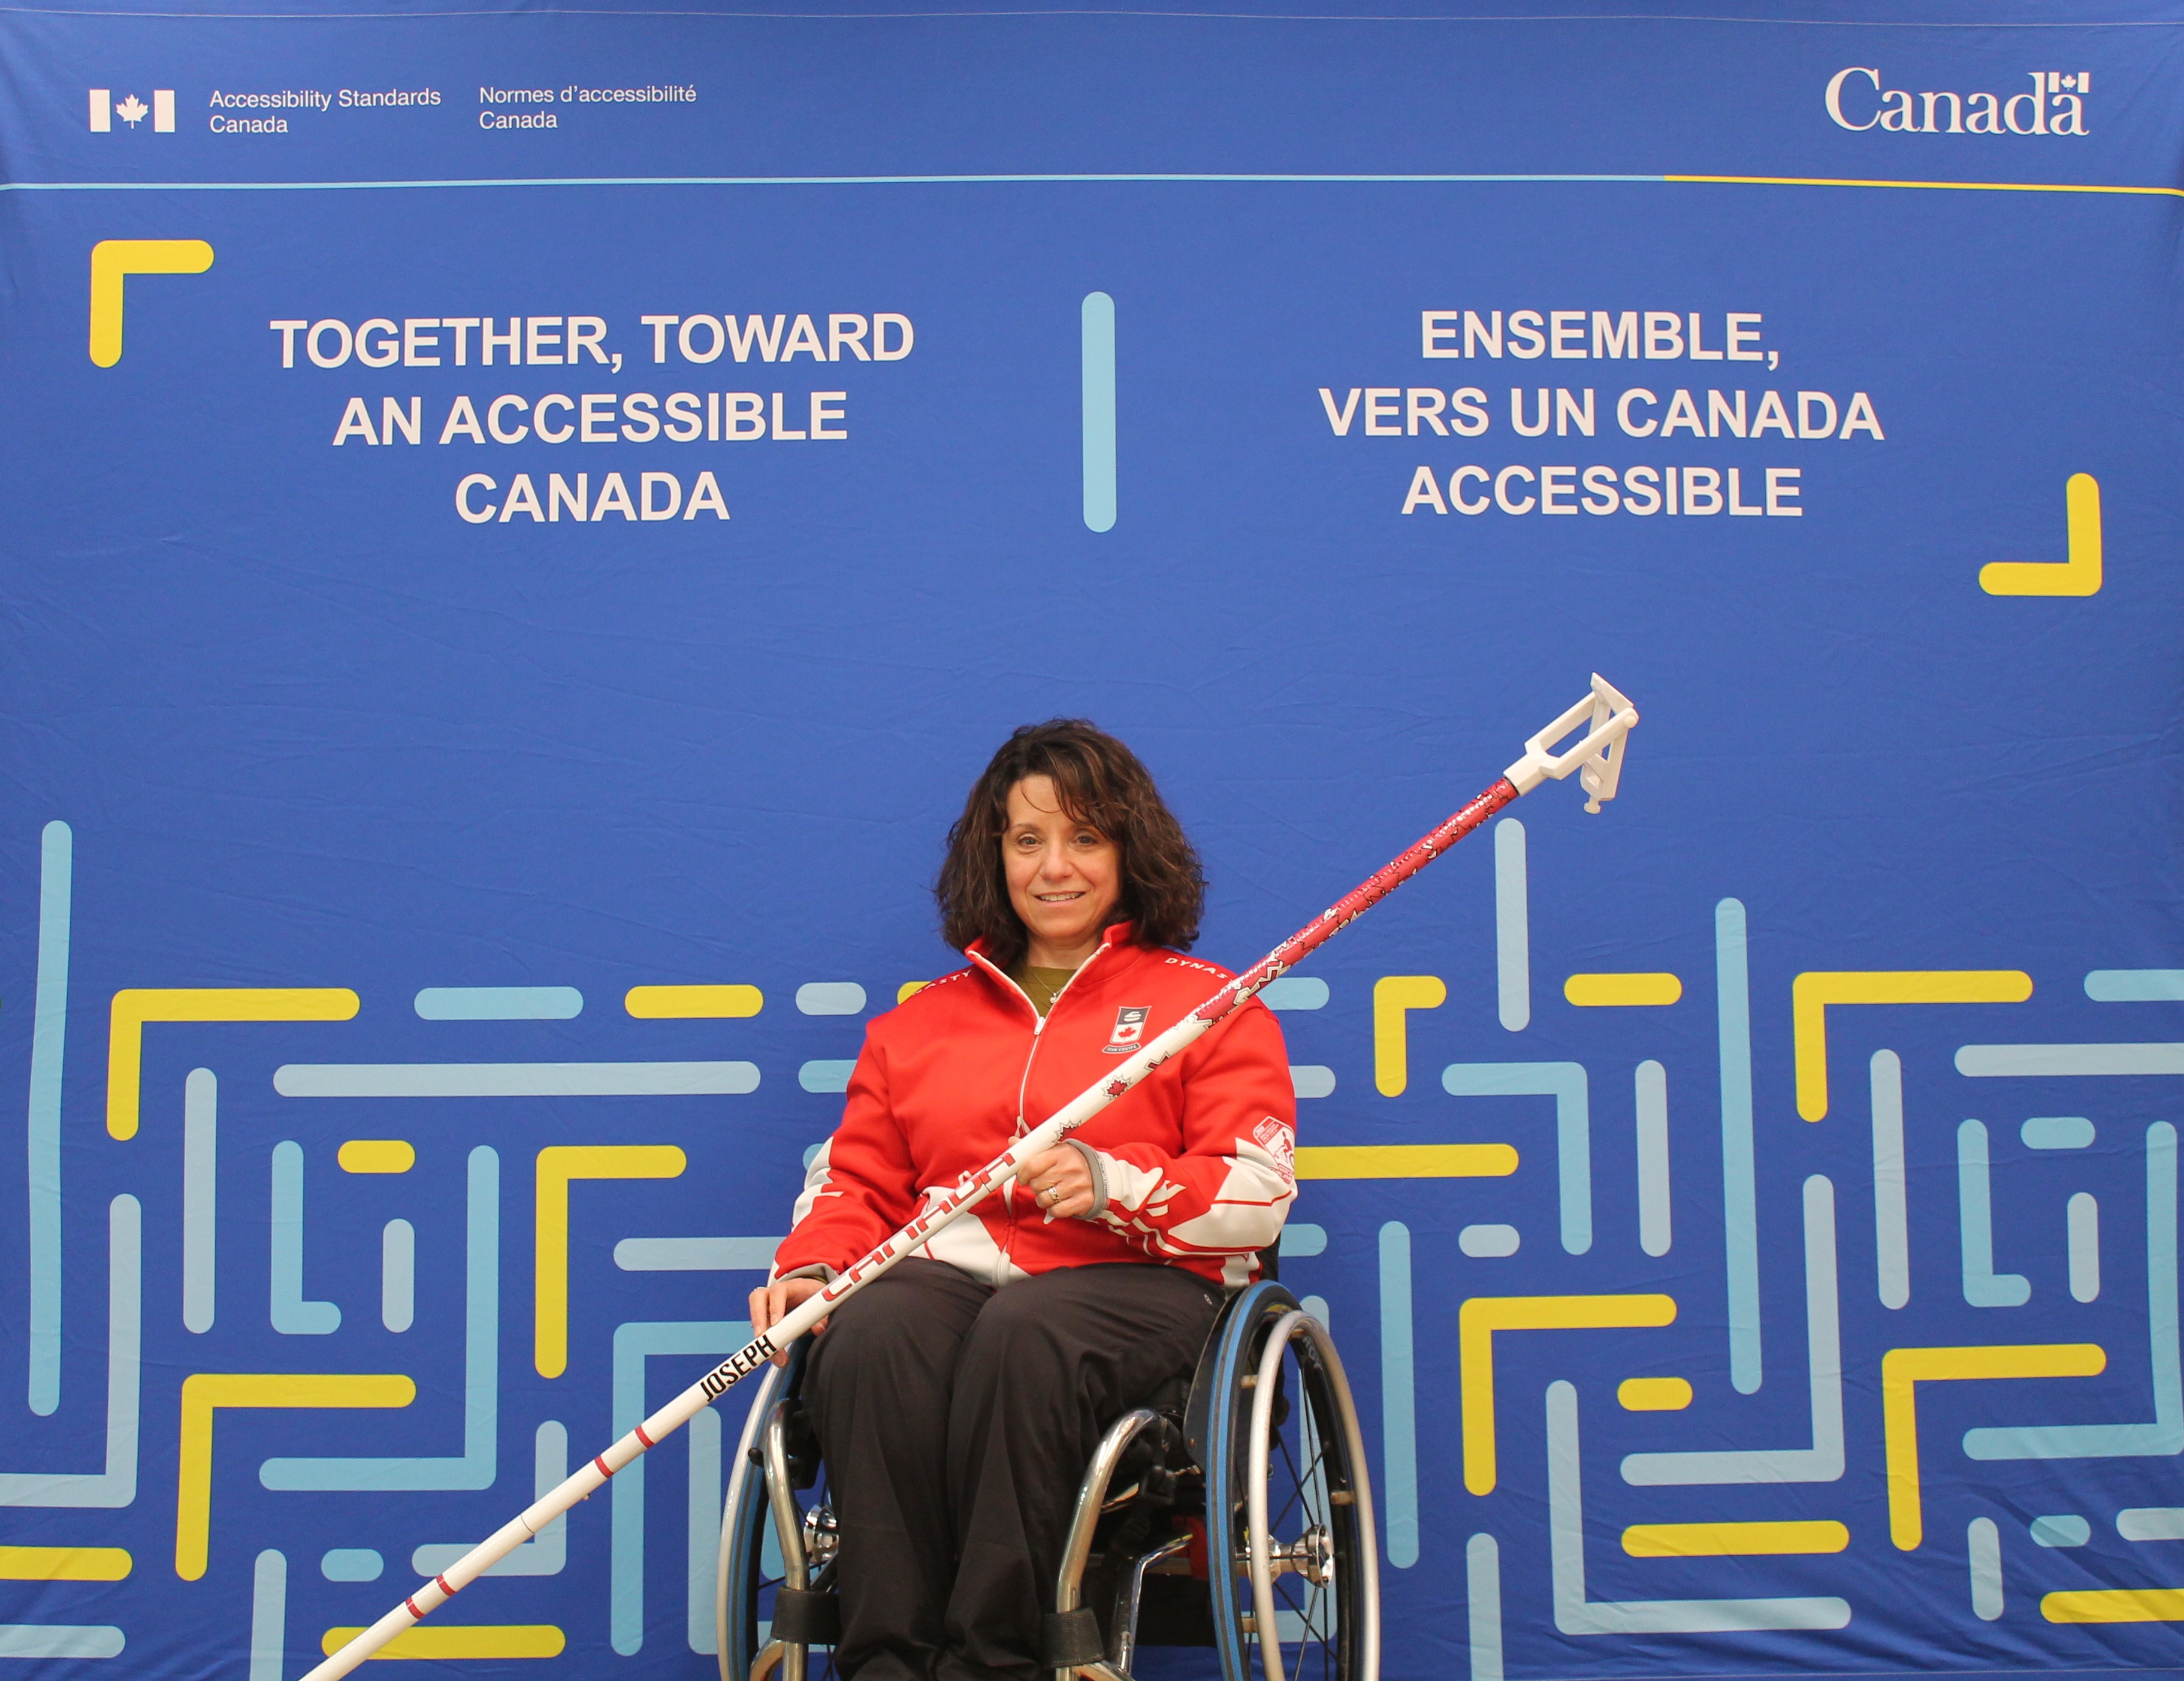 Collinda Joseph pose avec son fauteuil roulant et son bâton de curling. Le bâton est muni d'une poignée réglable à l'extrémité qui saisit la pierre et lui permet de la lancer à une certaine distance. Elle se trouve devant une toile de fond bleue sur laquelle est apposé le logo des Normes d'accessibilité Canada. Le slogan en anglais se lit comme suit : "Together, toward an accessible Canada". Le slogan français se lit comme suit : "Ensemble vers un Canada Accessible".